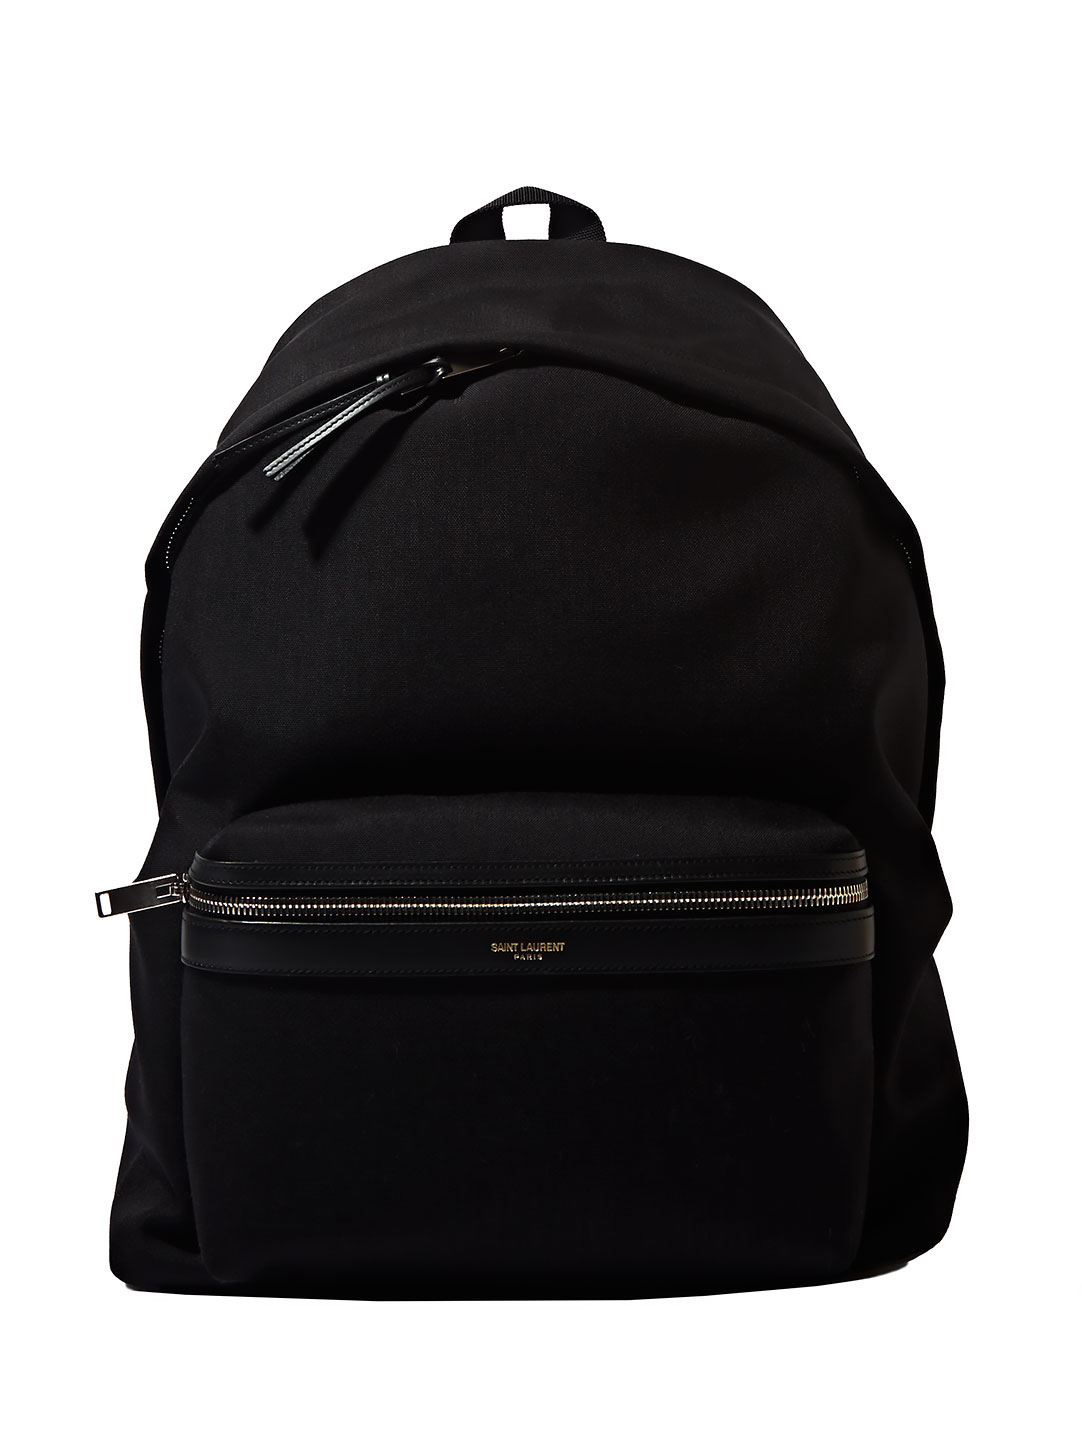 Lyst - Saint Laurent Mens Leather Details Backpack in Black for Men